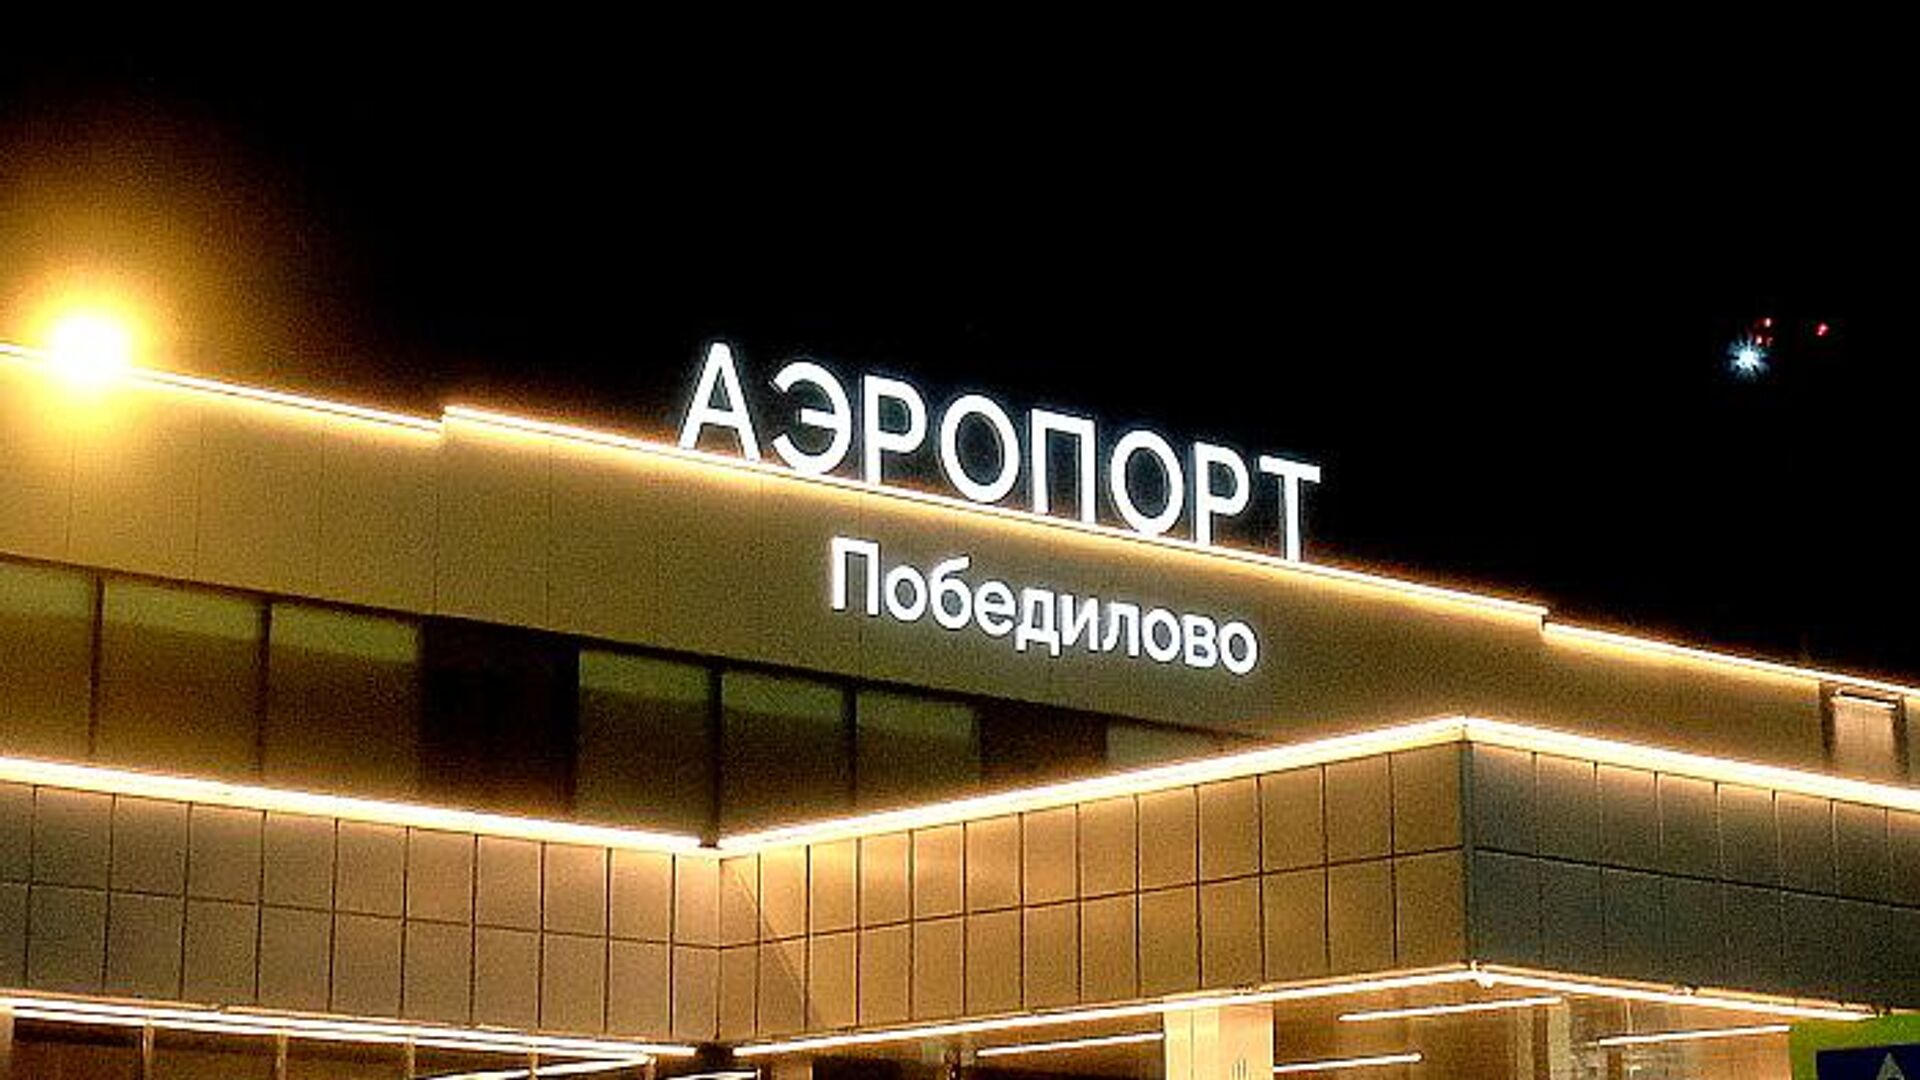 Аэропорт Победилово0